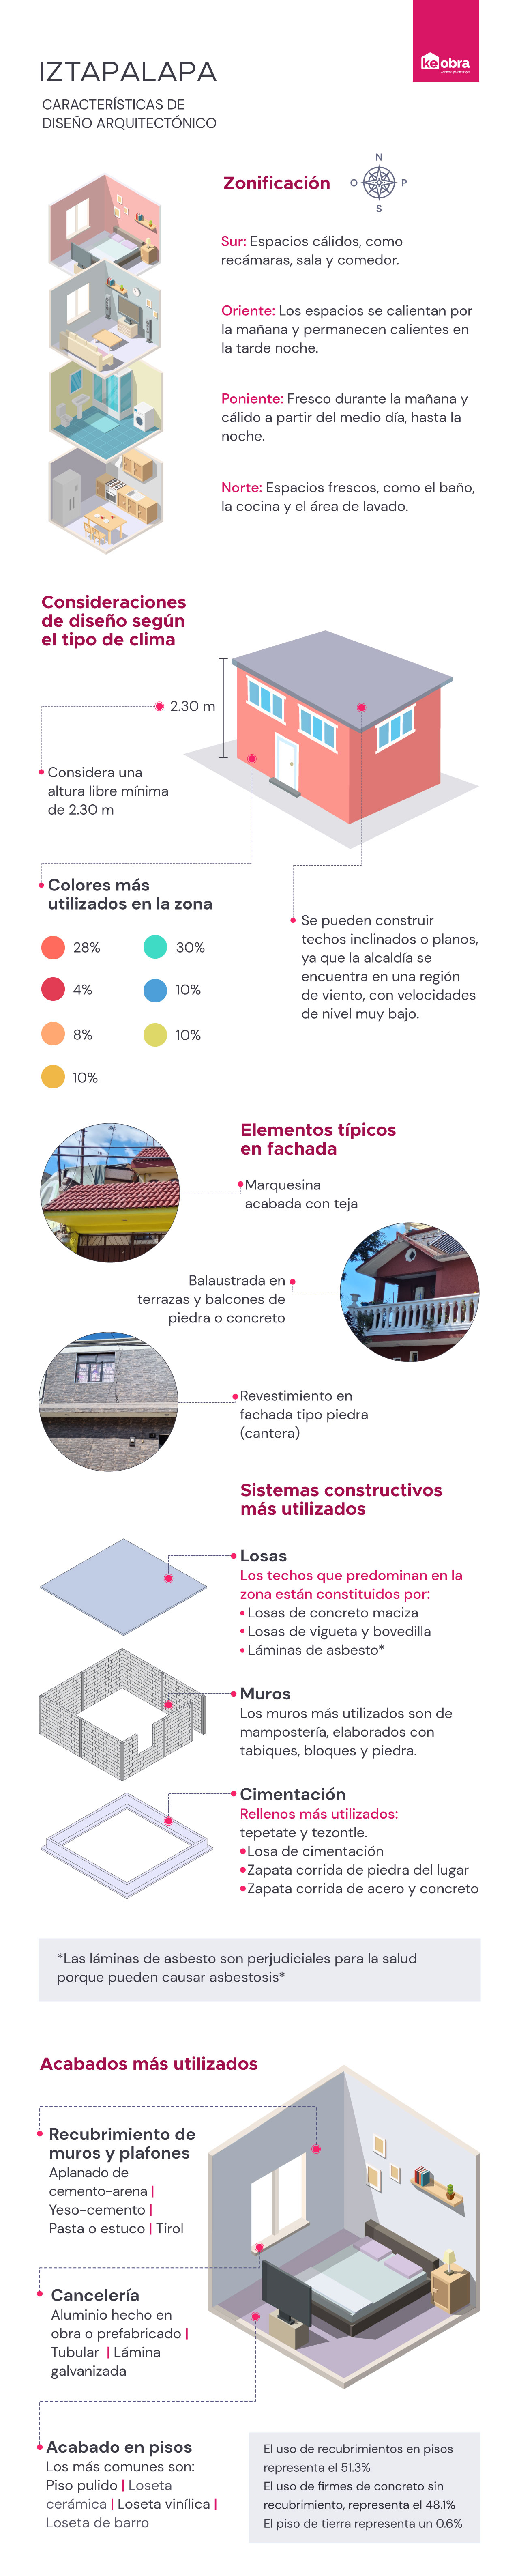 Características generales para construcción y diseño arquitectónico en Iztalapapa, Ciudad de México, investigación de KeObra